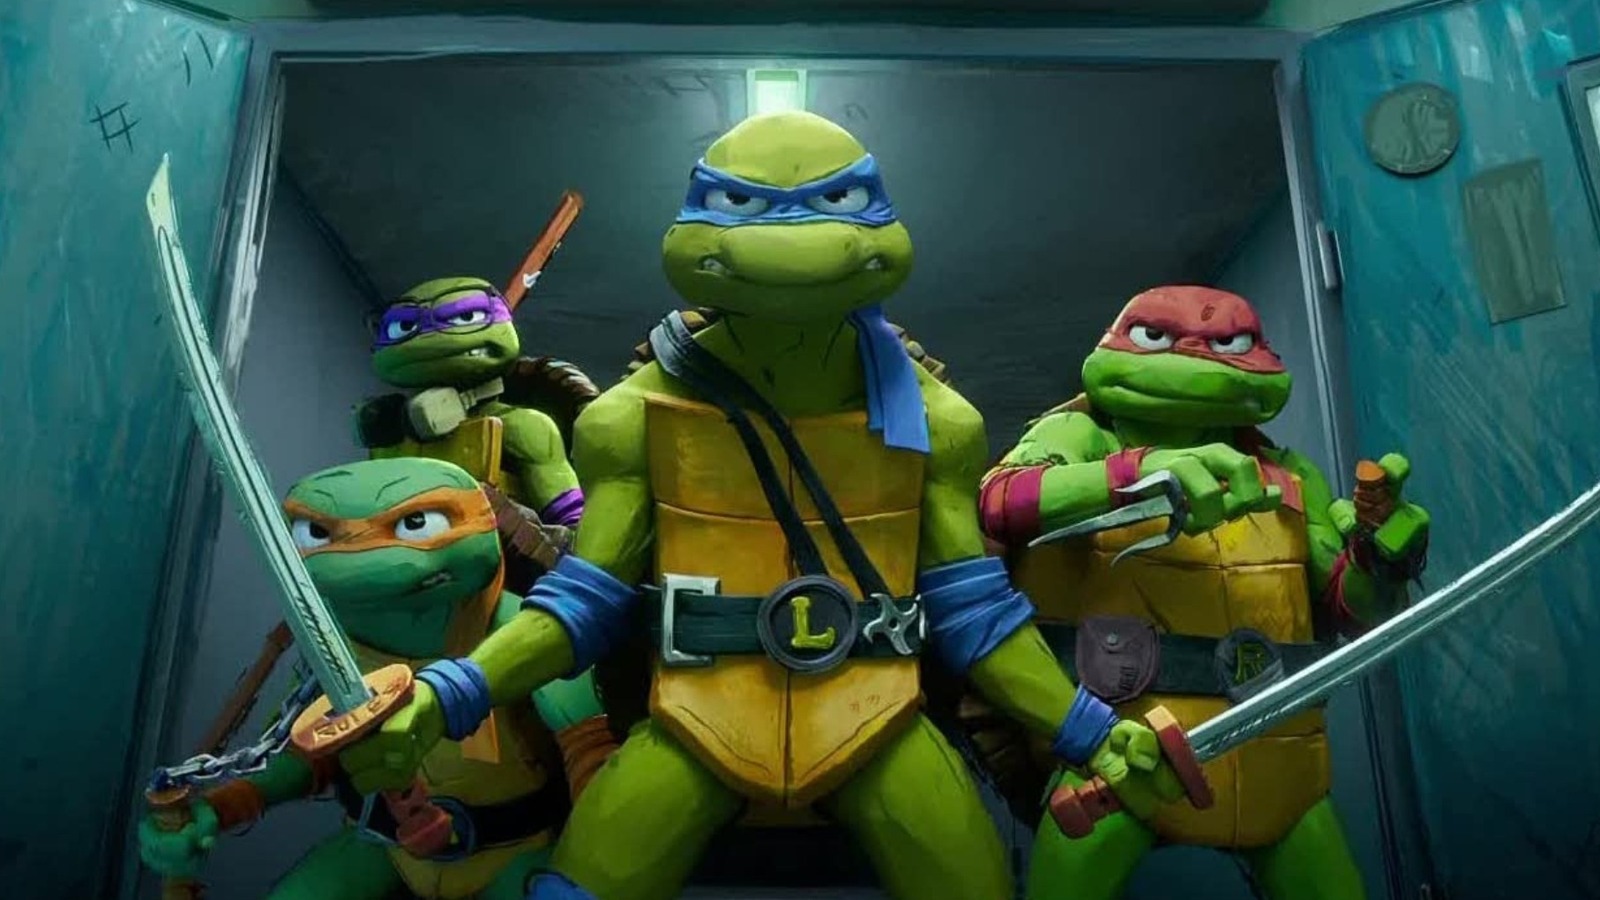 Every Teenage Mutant Ninja Turtles Movie Ranked (Including Mutant